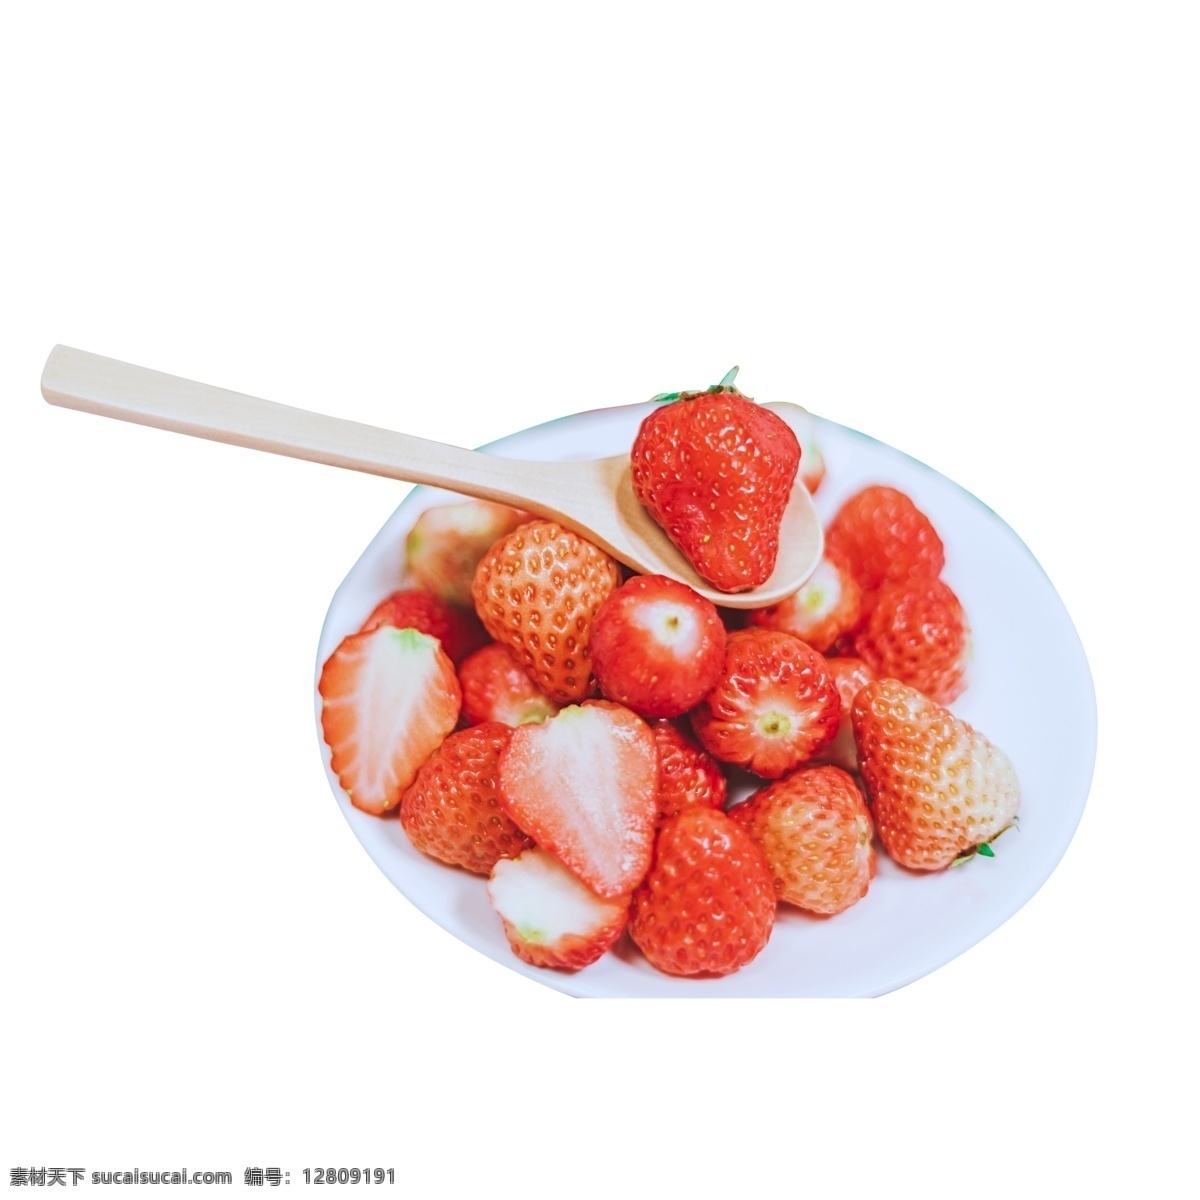 一盘红色草莓 草莓 红色 红色草莓 盘子 白色盘子